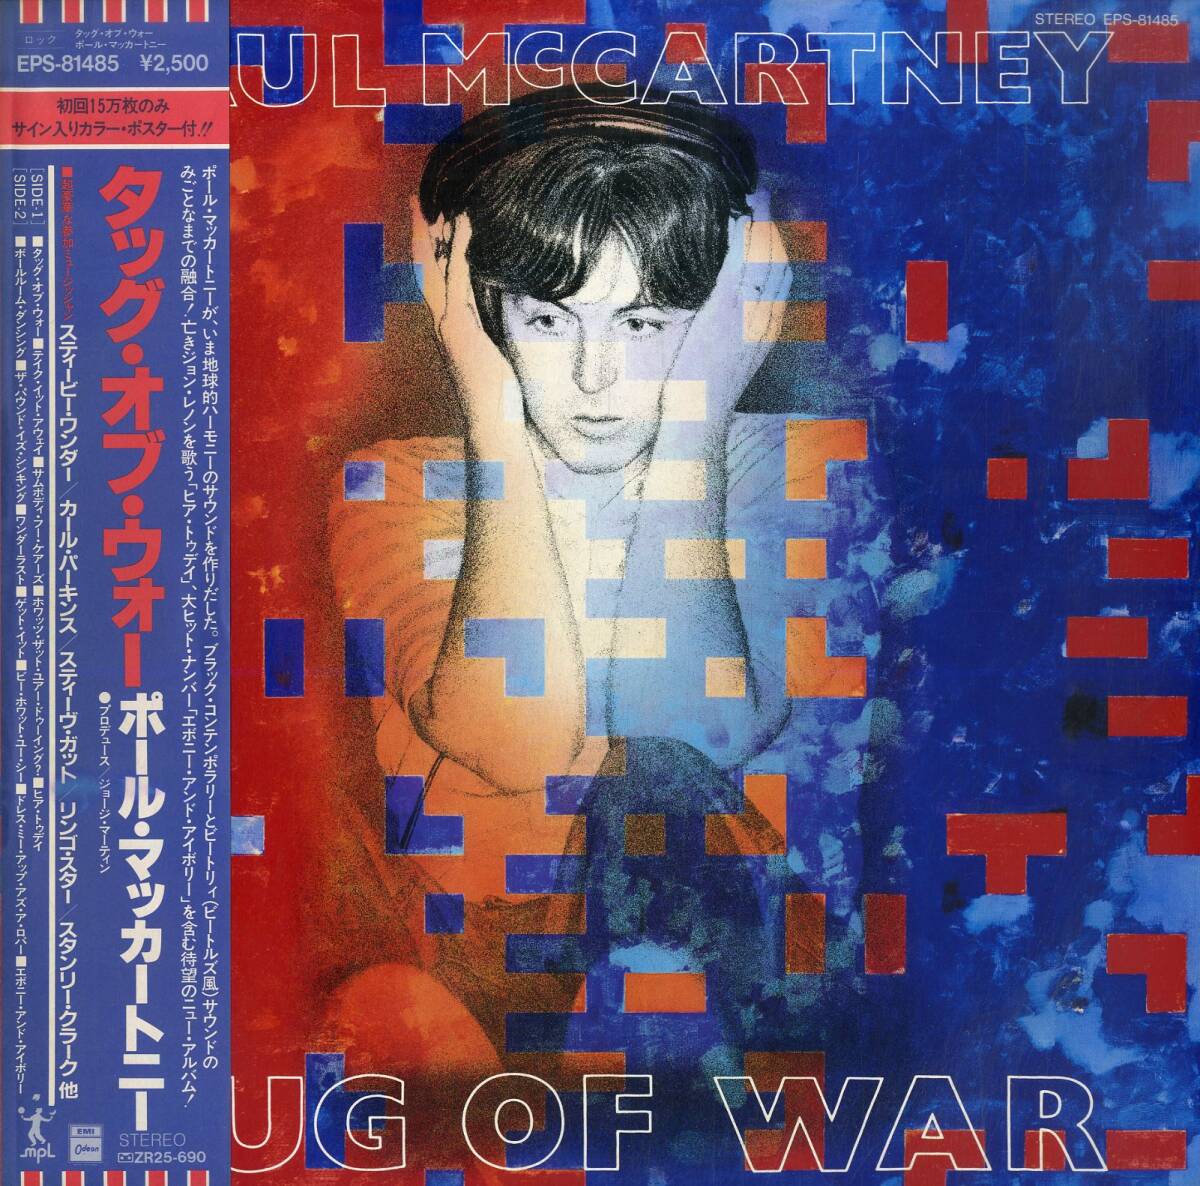 A00593072/LP/ポール・マッカートニー「Tug of War (1982年・EPS-81485)」の画像1